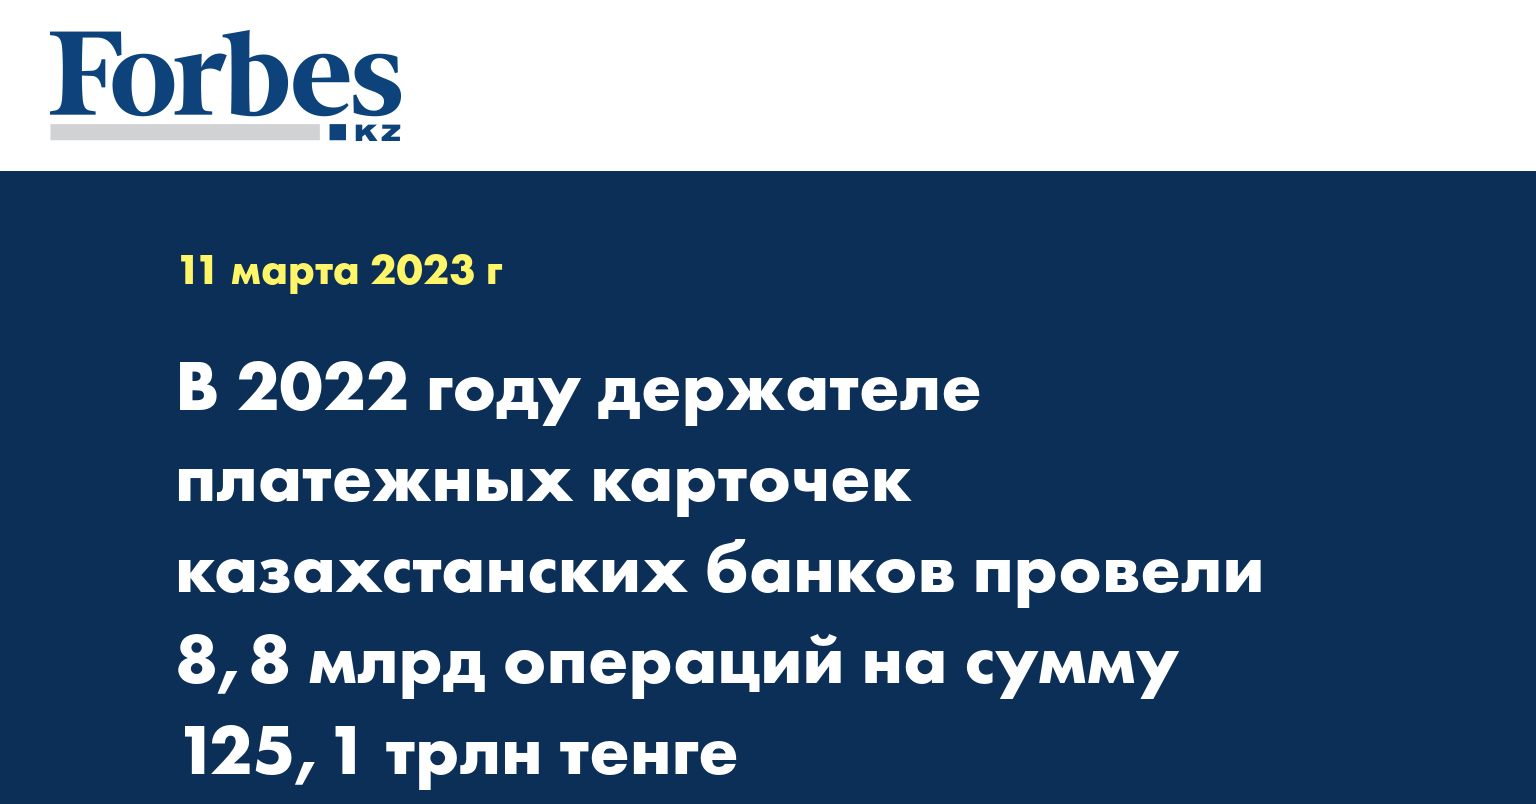 В 2022 году держателе платежных карточек казахстанских банков провели 8,8 млрд операций на сумму 125,1 трлн тенге